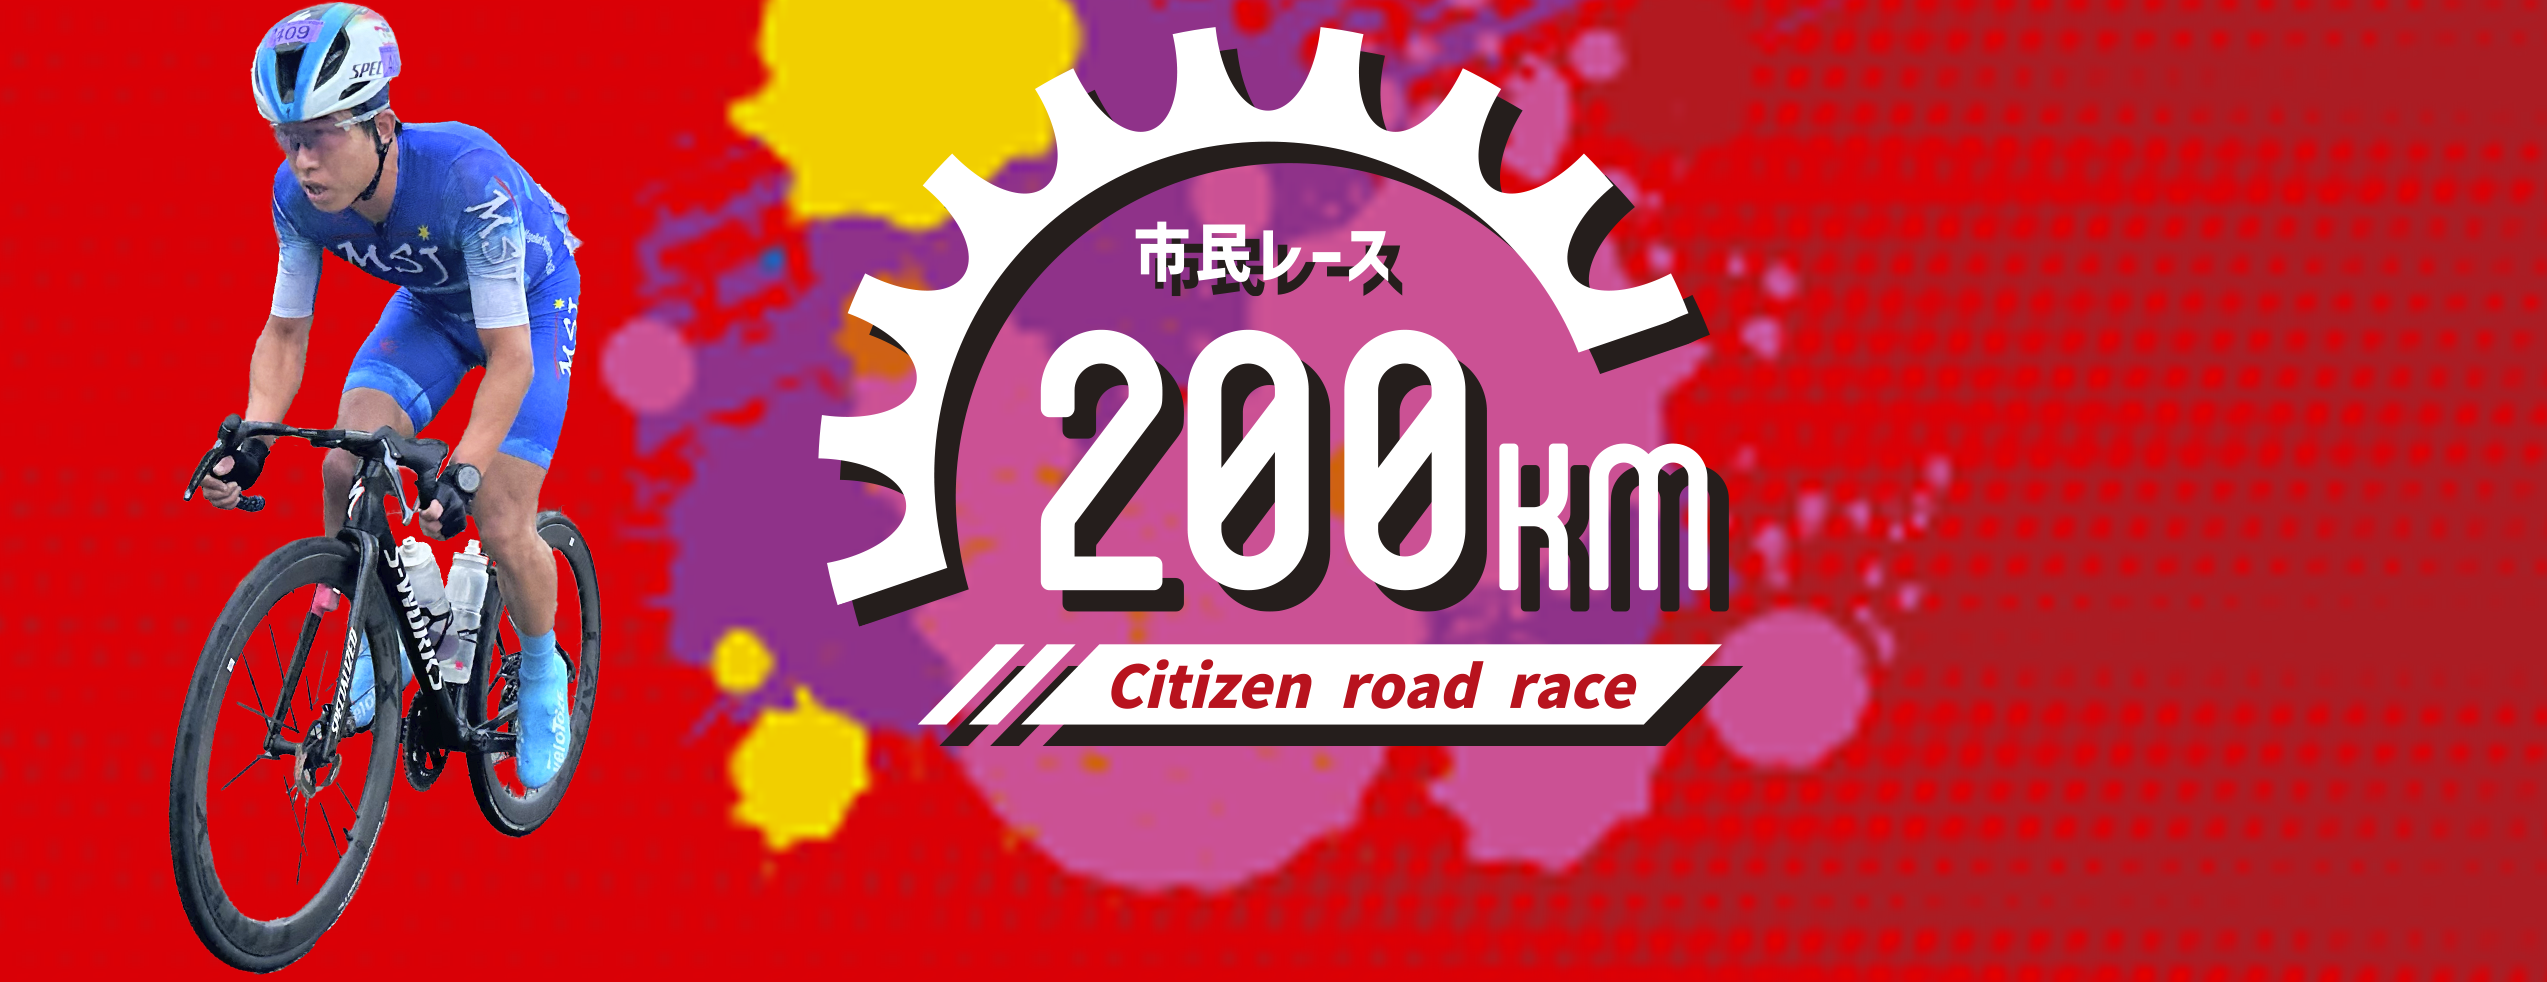 市民レース 200km